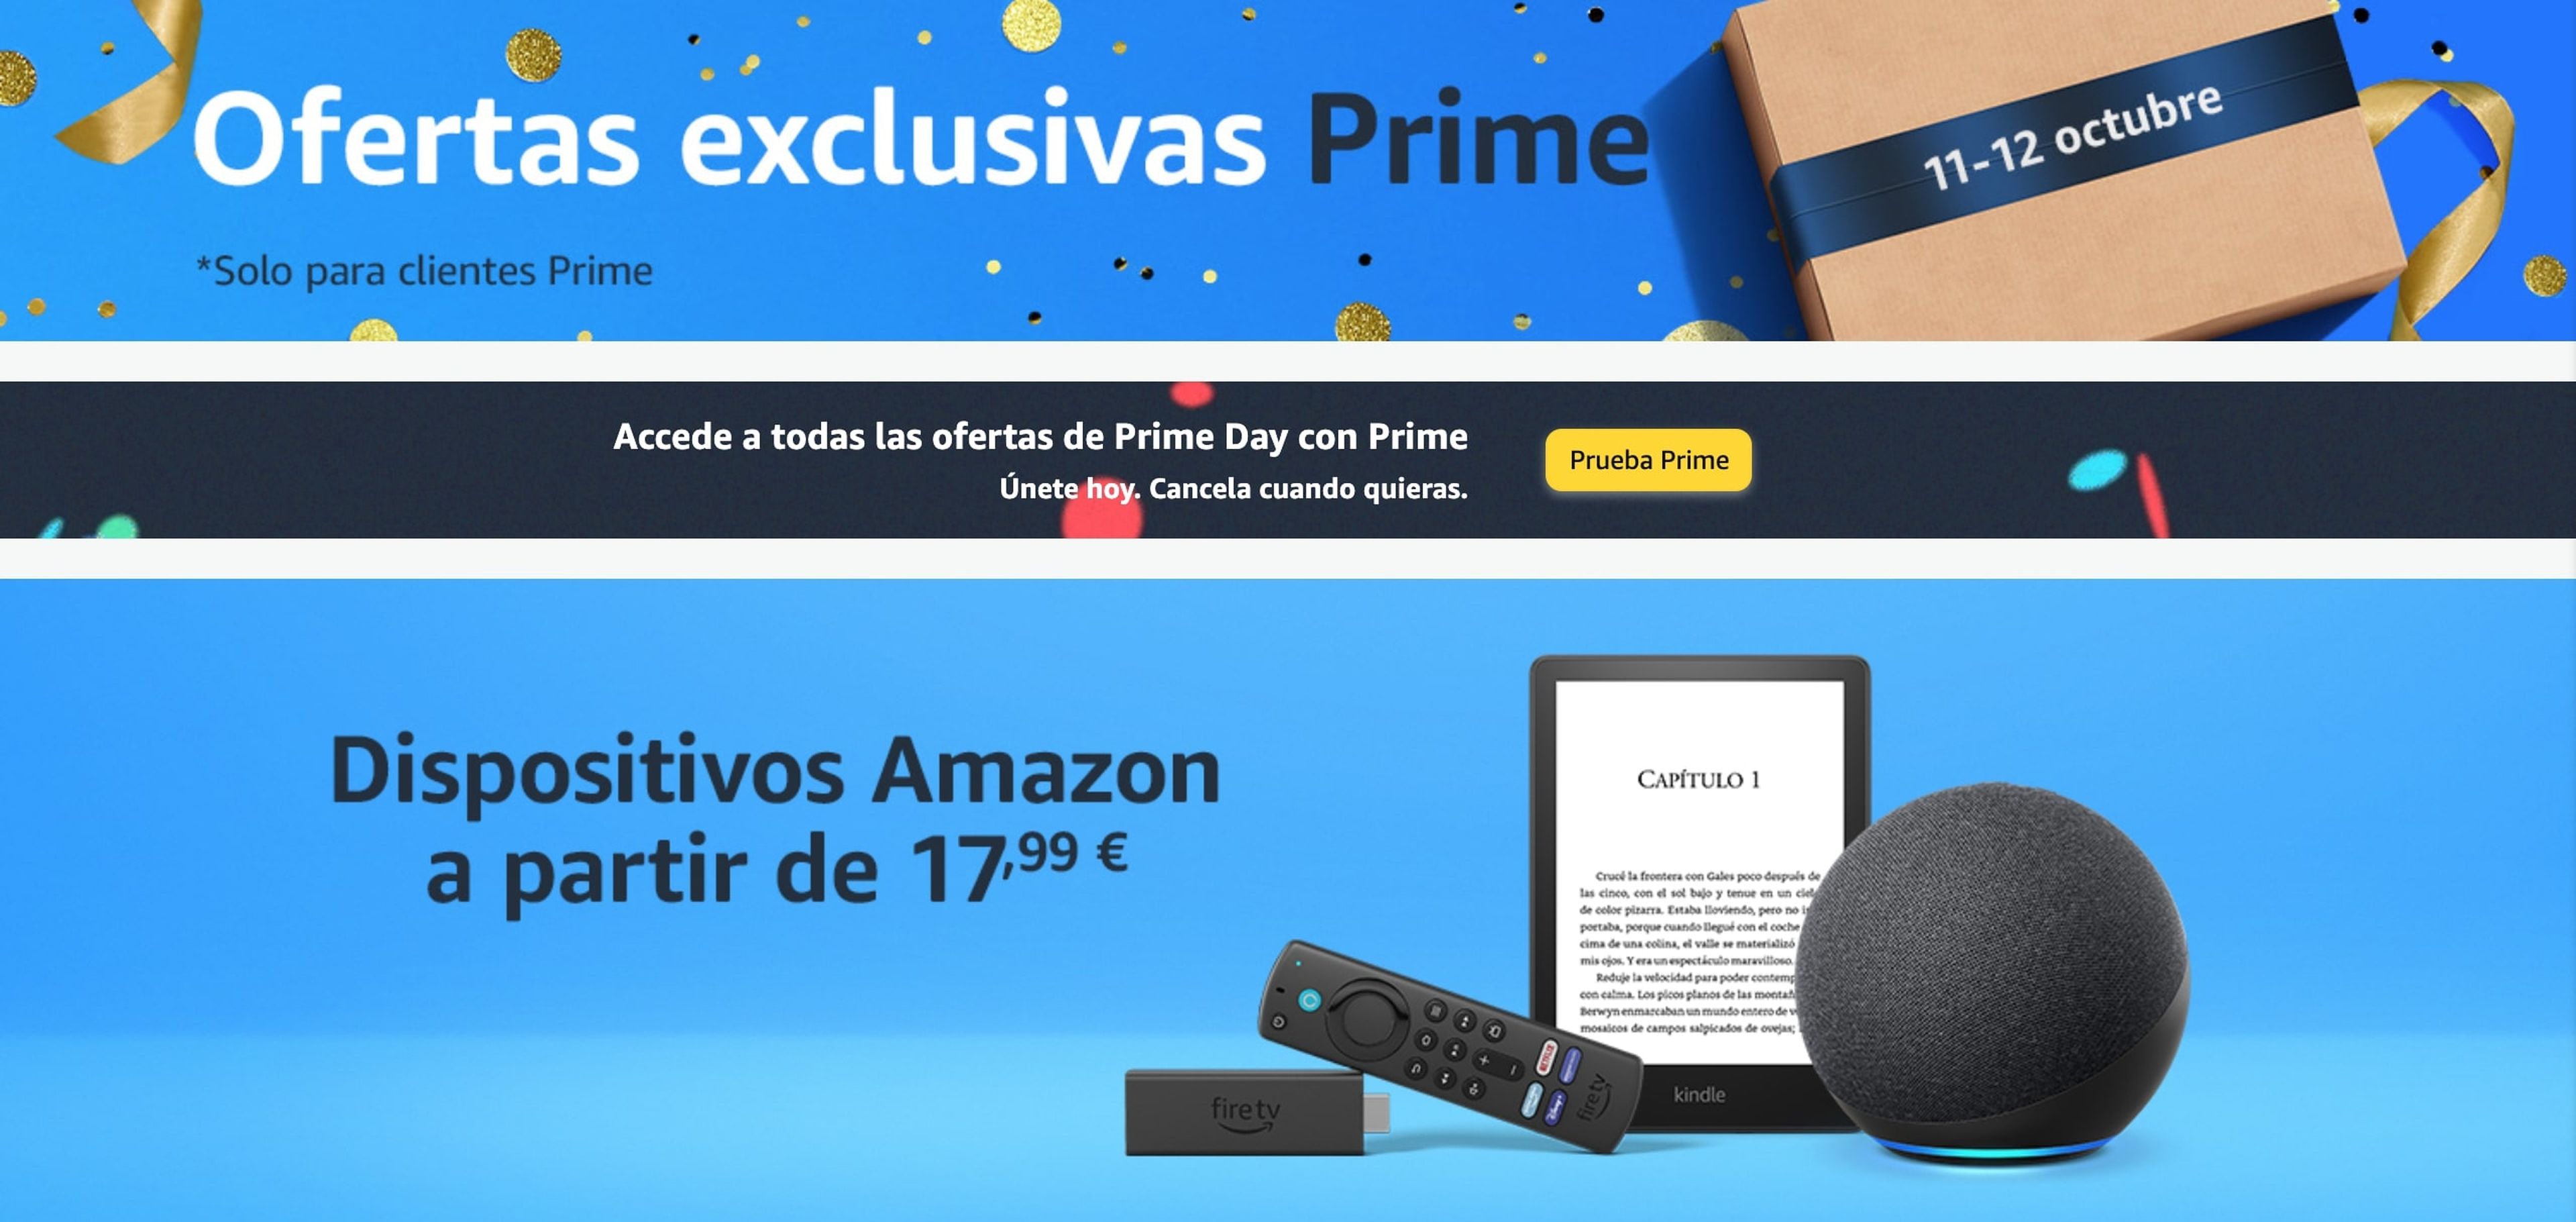 'Ofertas exclusivas Prime' de Amazon.